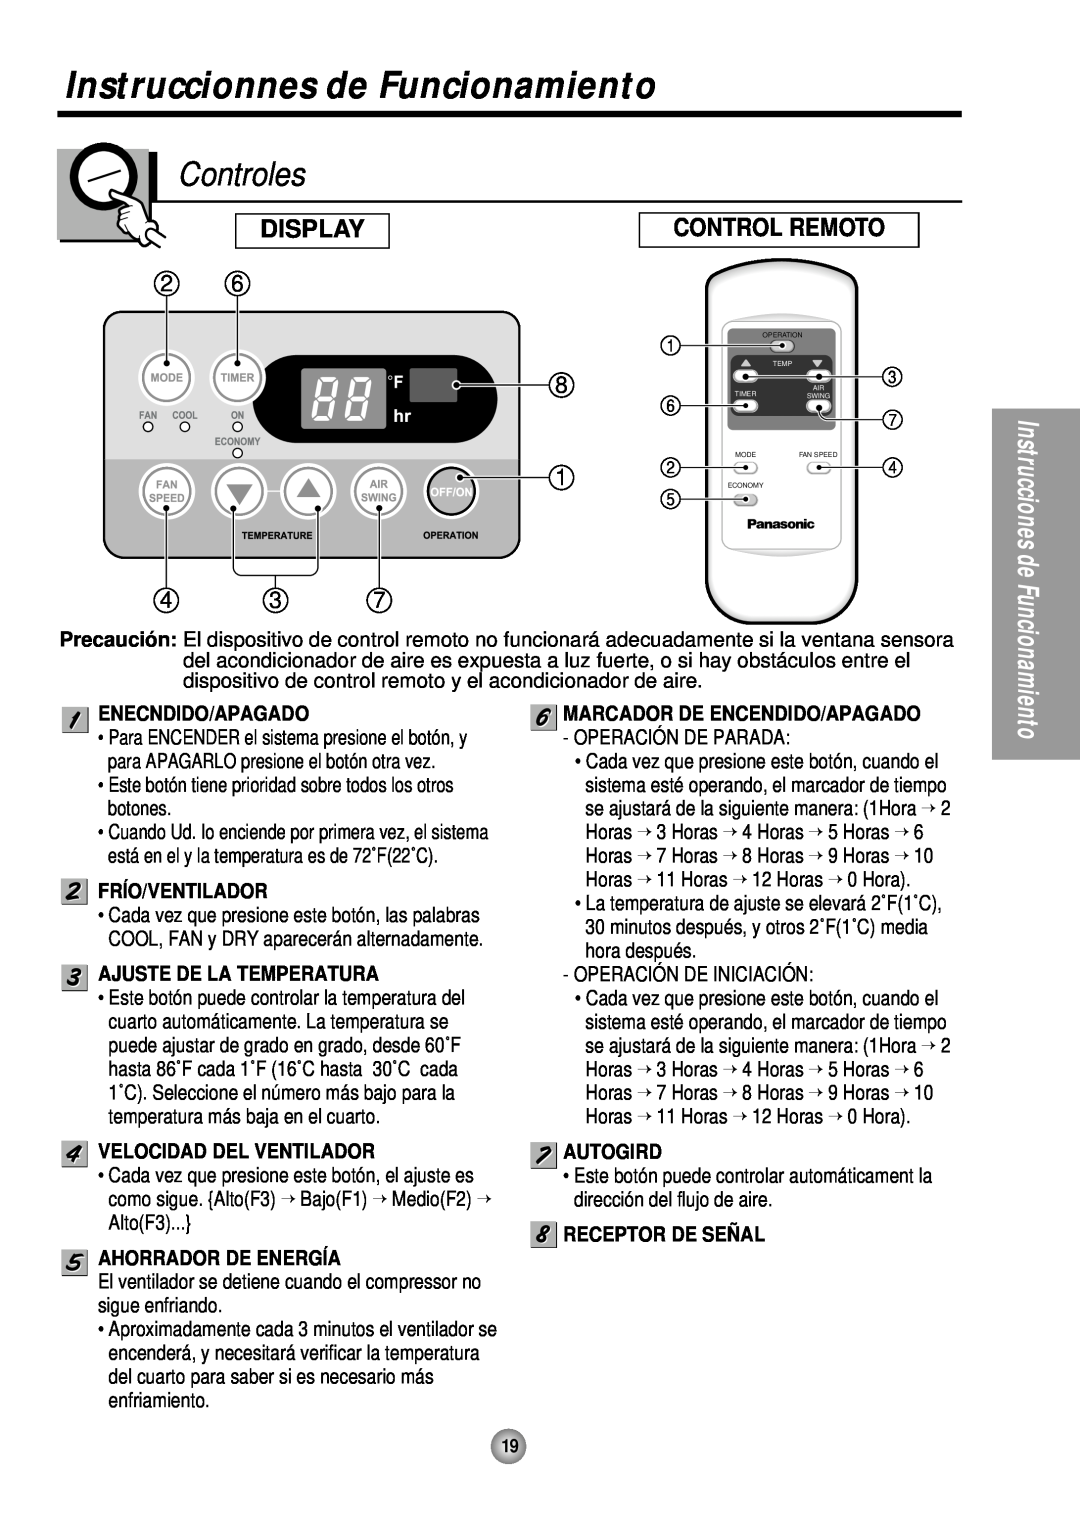 Panasonic CW-XC243HU Instruccionnes de Funcionamiento, Controles, Enecndido/Apagado, Frío/Ventilador, Ahorrador De Energía 